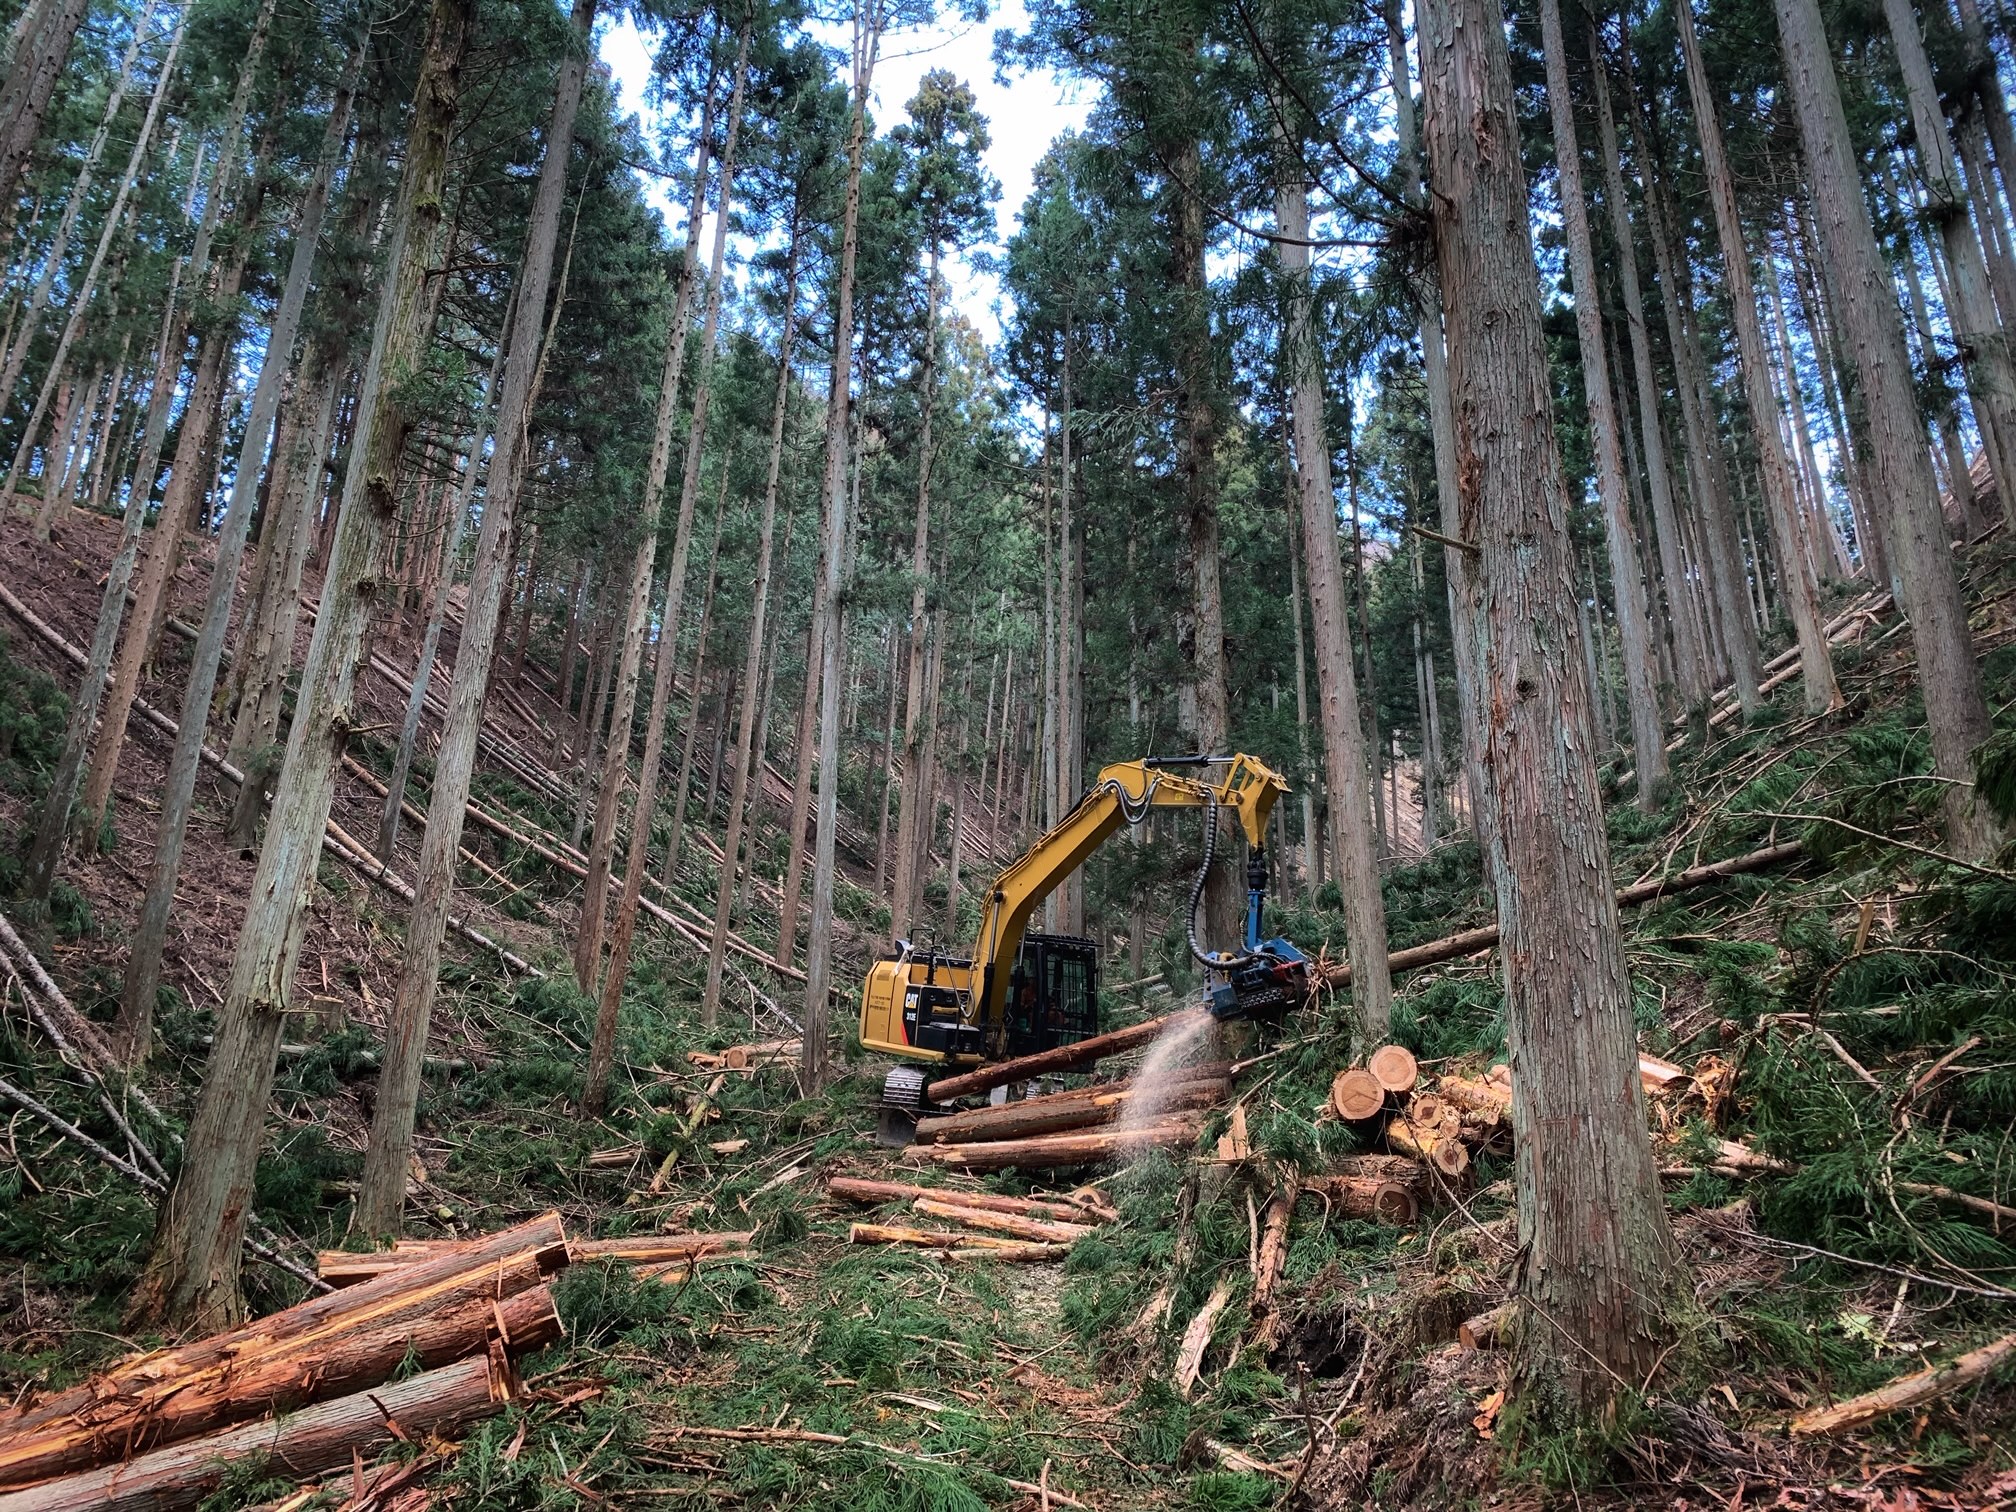 地域の森林を守り育てる、やりがいのある仕事です。